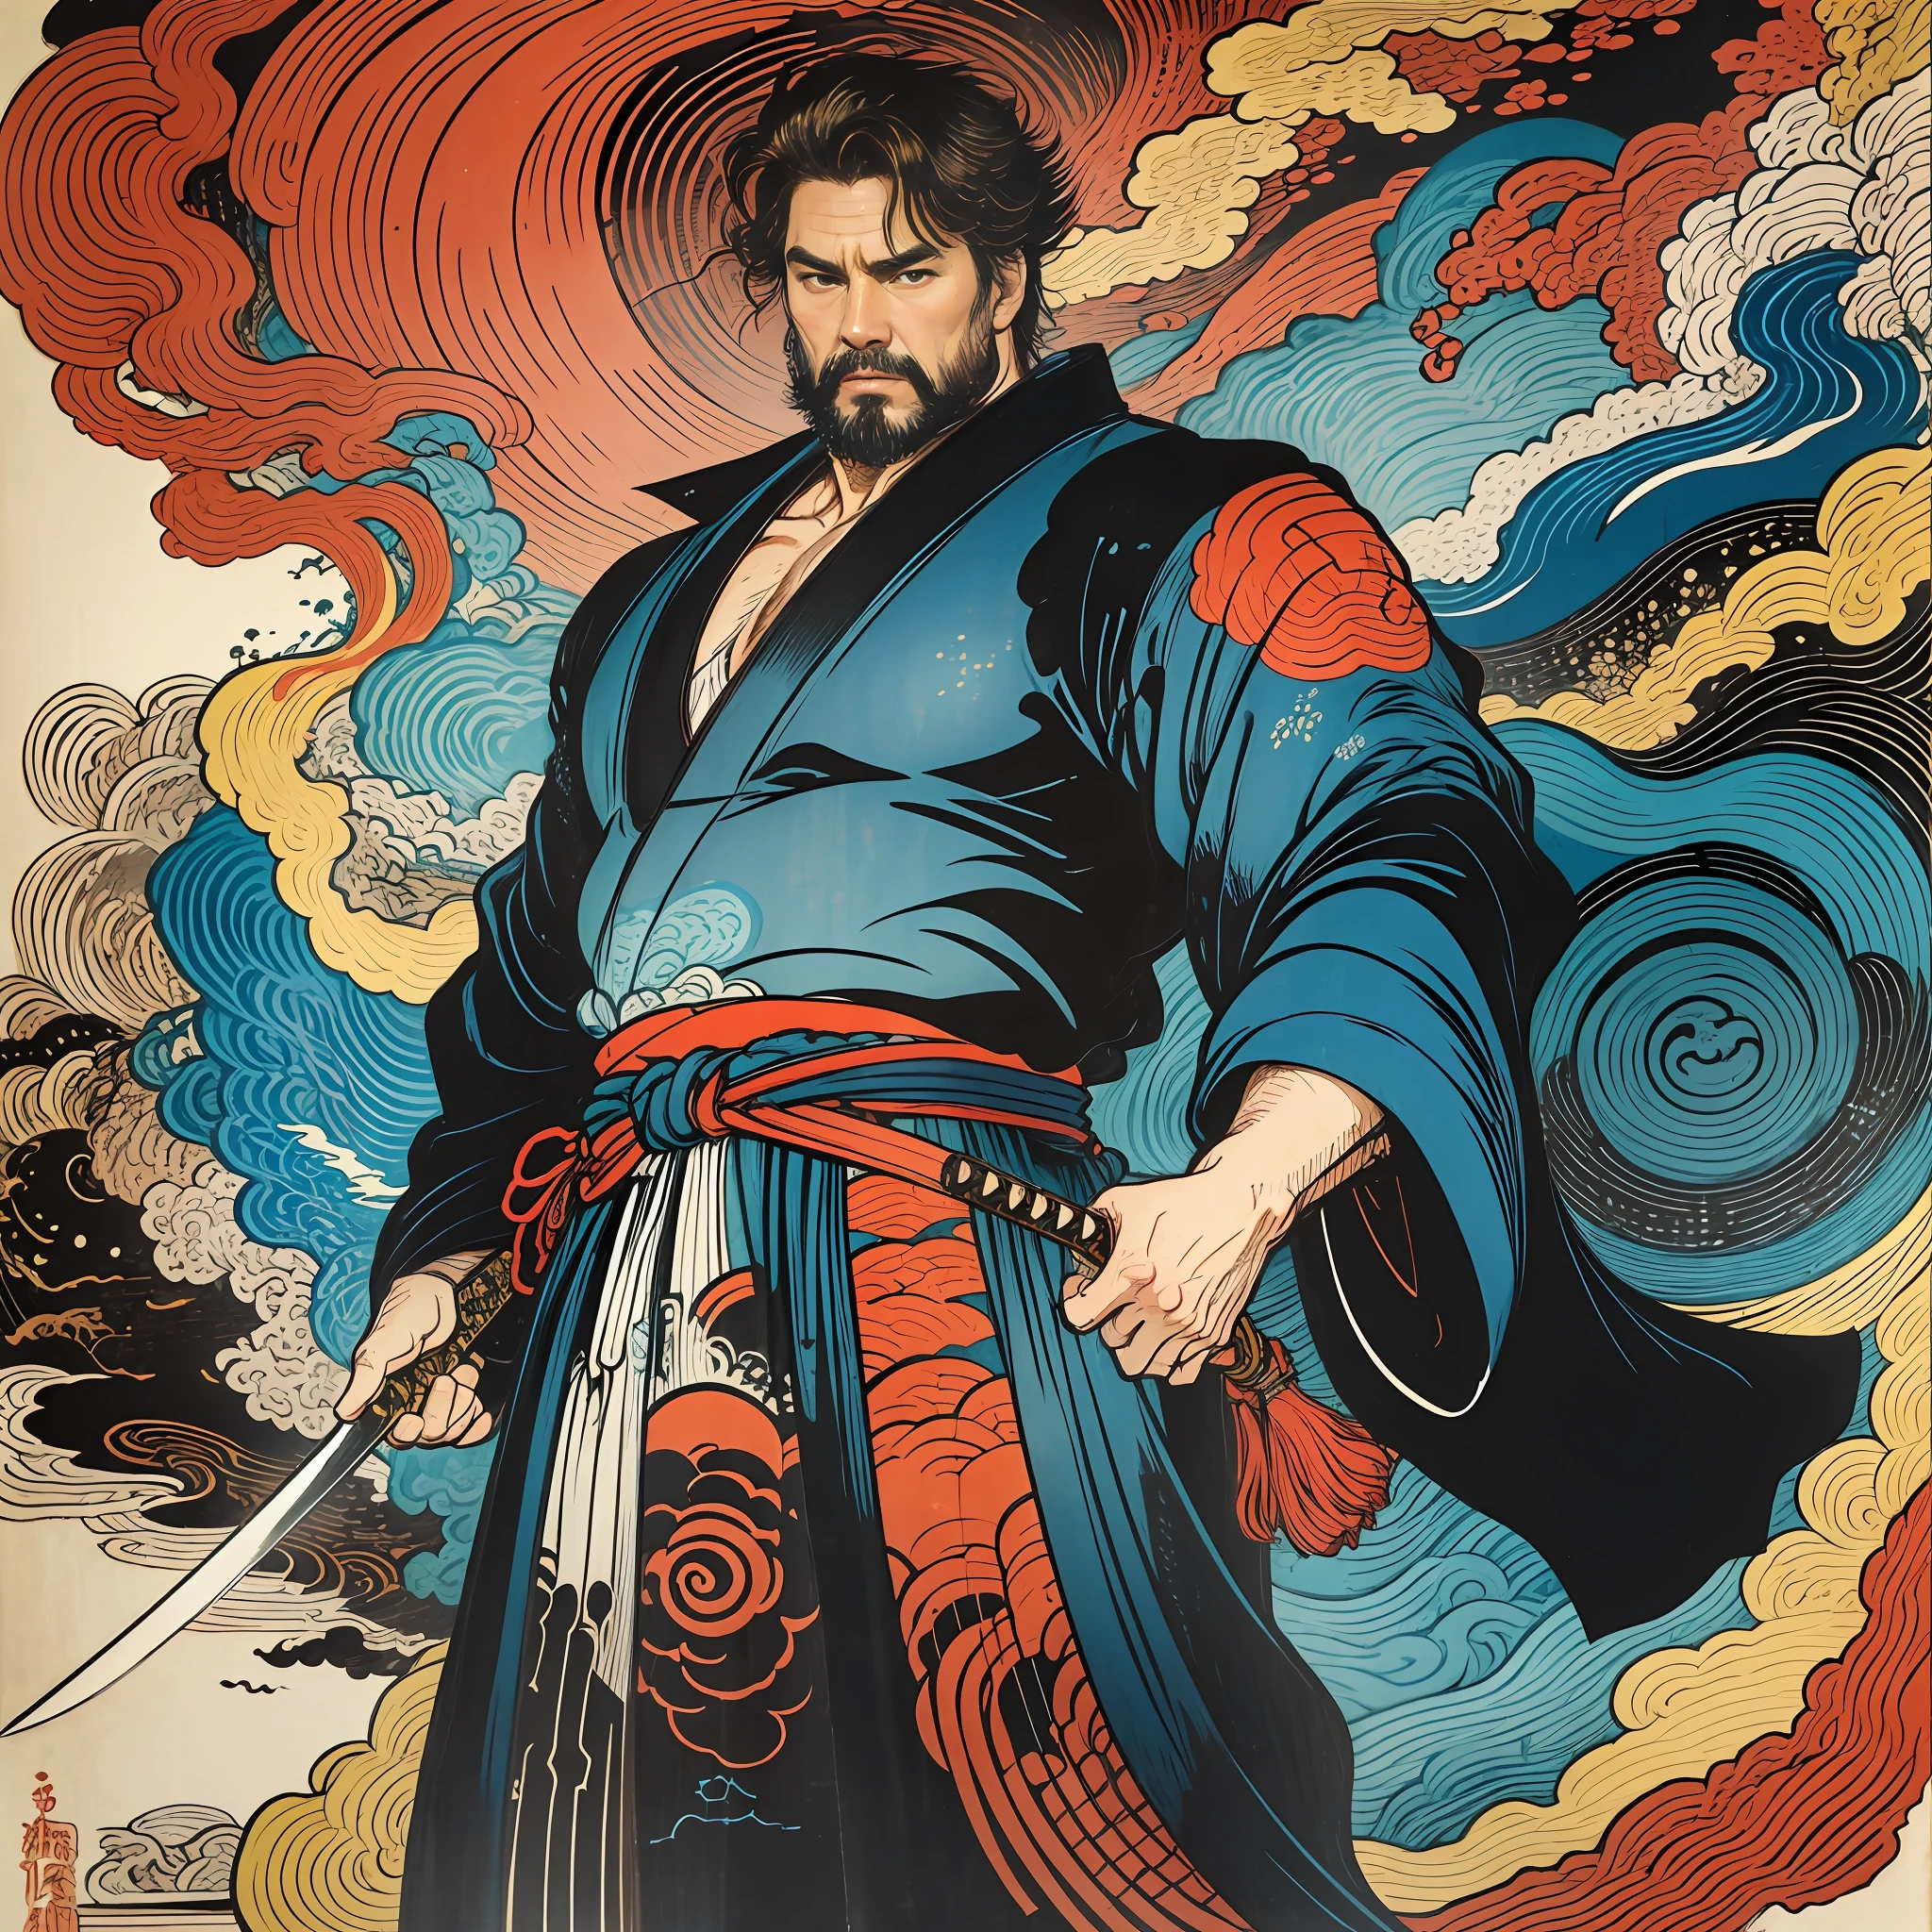 Il s&#39;agit d&#39;une peinture corporelle complète aux couleurs naturelles avec des dessins au trait de style Katsushika Hokusai.. L&#39;épéiste Tom Cruise a un gros corps comme un homme fort. Samouraï du Japon. Avec une expression de détermination digne mais virile, il affronte les mauvais esprits. Il a les cheveux noirs courts et une coupe courte, barbe taillée. Le haut de son corps est recouvert d&#39;un kimono noir de jais à la texture brillante., et son hakama arrive jusqu&#39;aux genoux. Dans sa main droite, il tient une épée japonaise avec une partie d&#39;épée plus longue.. dans la plus haute qualité, chef-d&#39;œuvre haute résolution de style ukiyo-e, éclairs et flammes tourbillonnantes. Parmi eux, Tom Cruise est debout, le dos droit, Face à l&#39;avant.